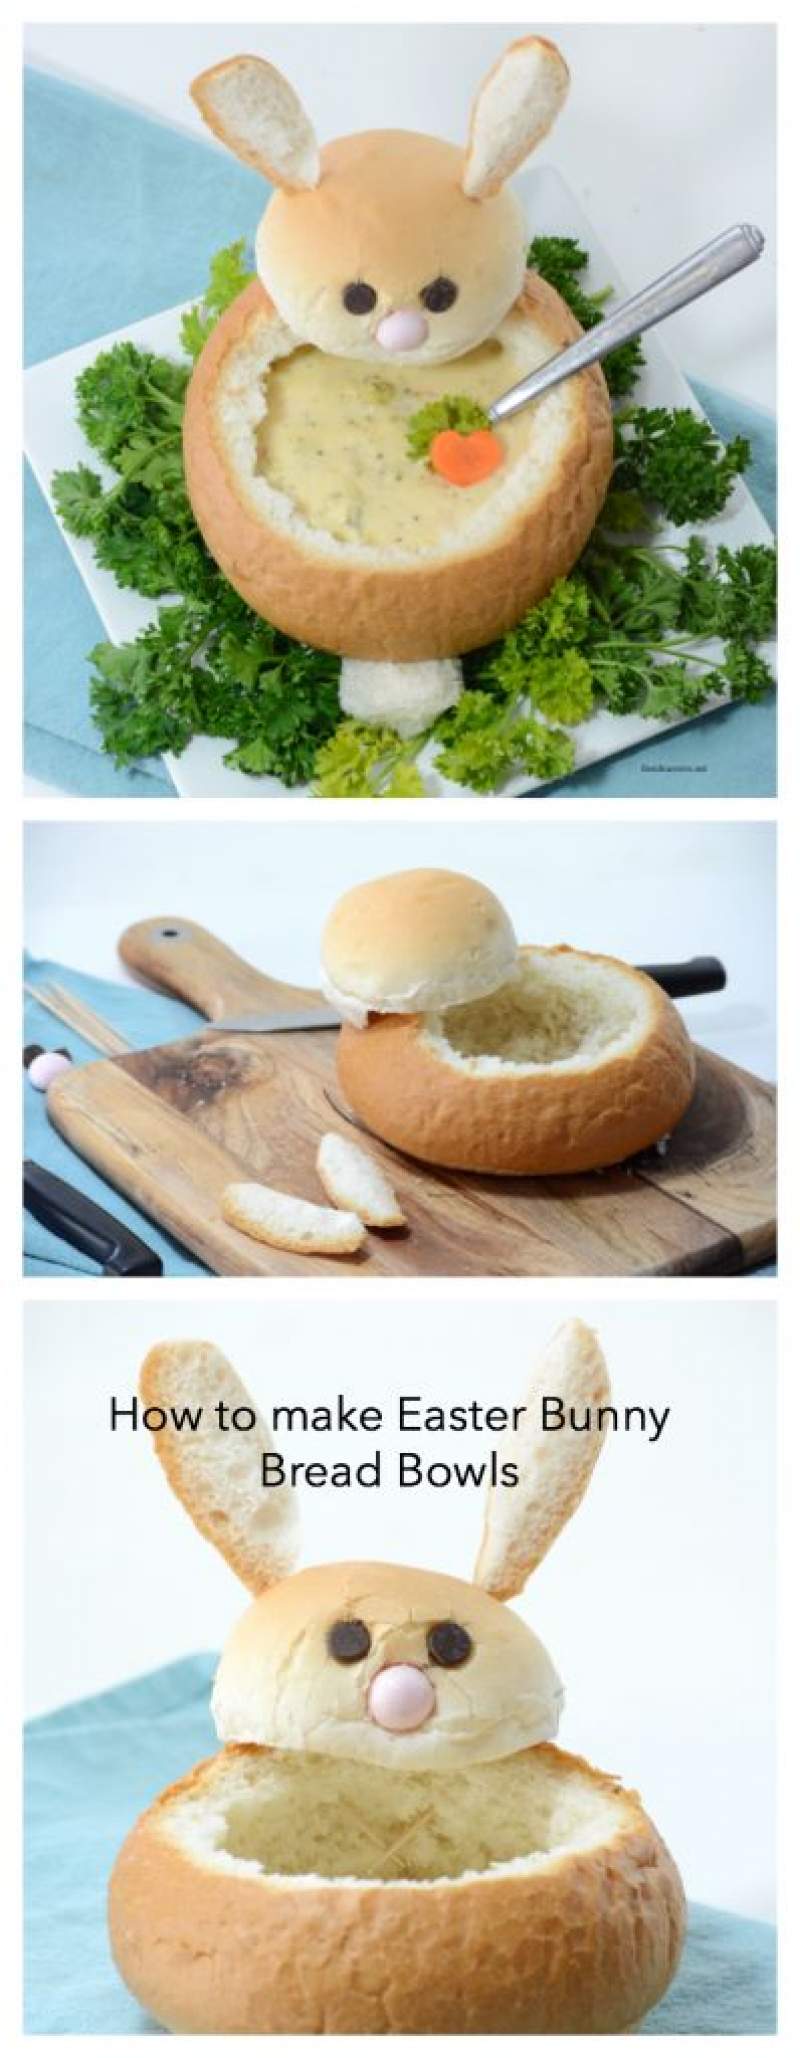 Easter dinner recipes